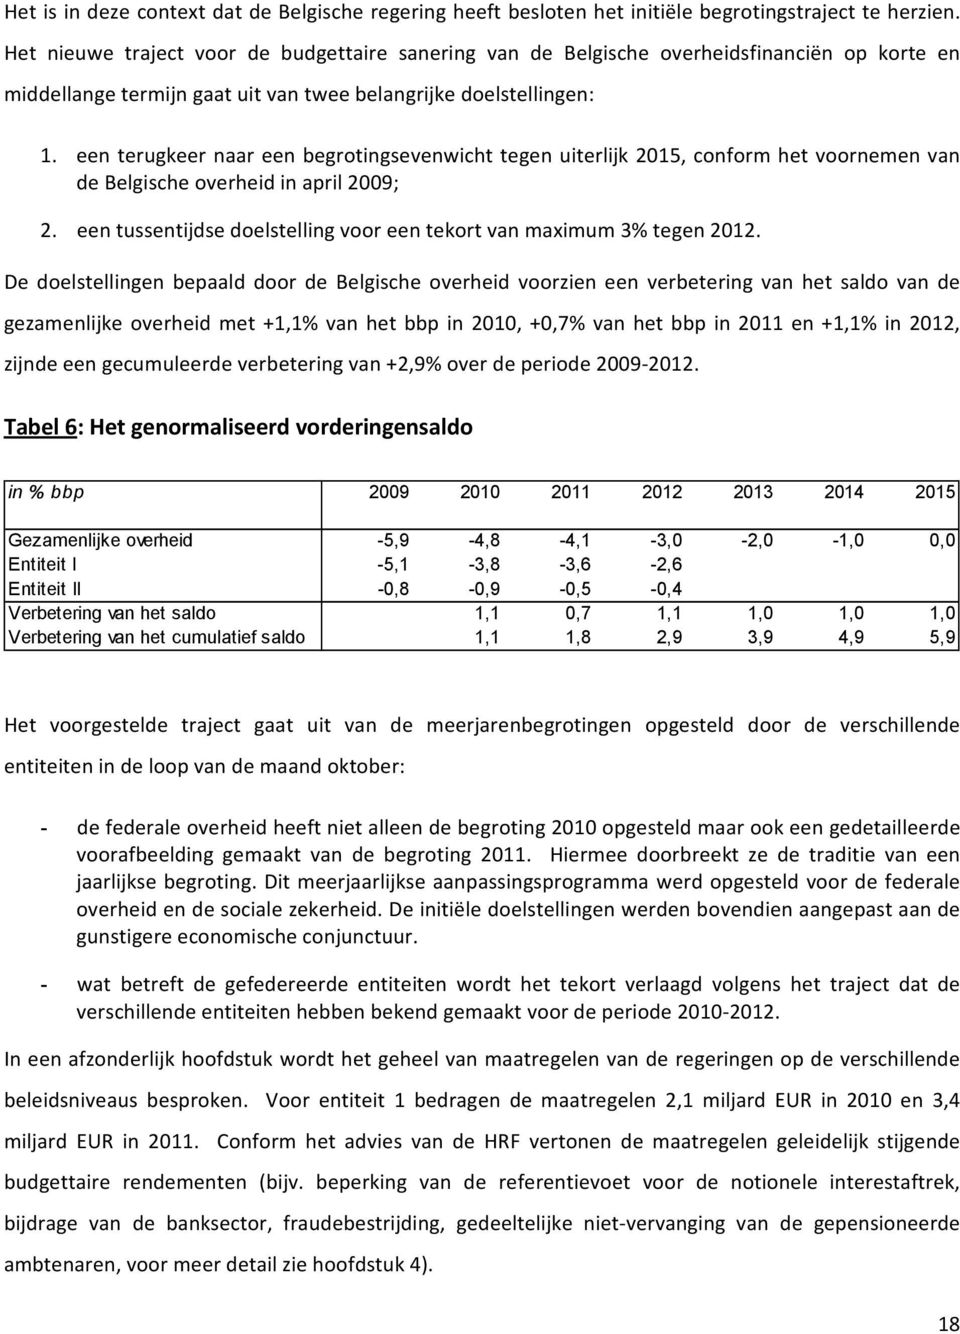 een terugkeer naar een begrotingsevenwicht tegen uiterlijk 2015, conform het voornemen van de Belgische overheid in april 2009; 2.